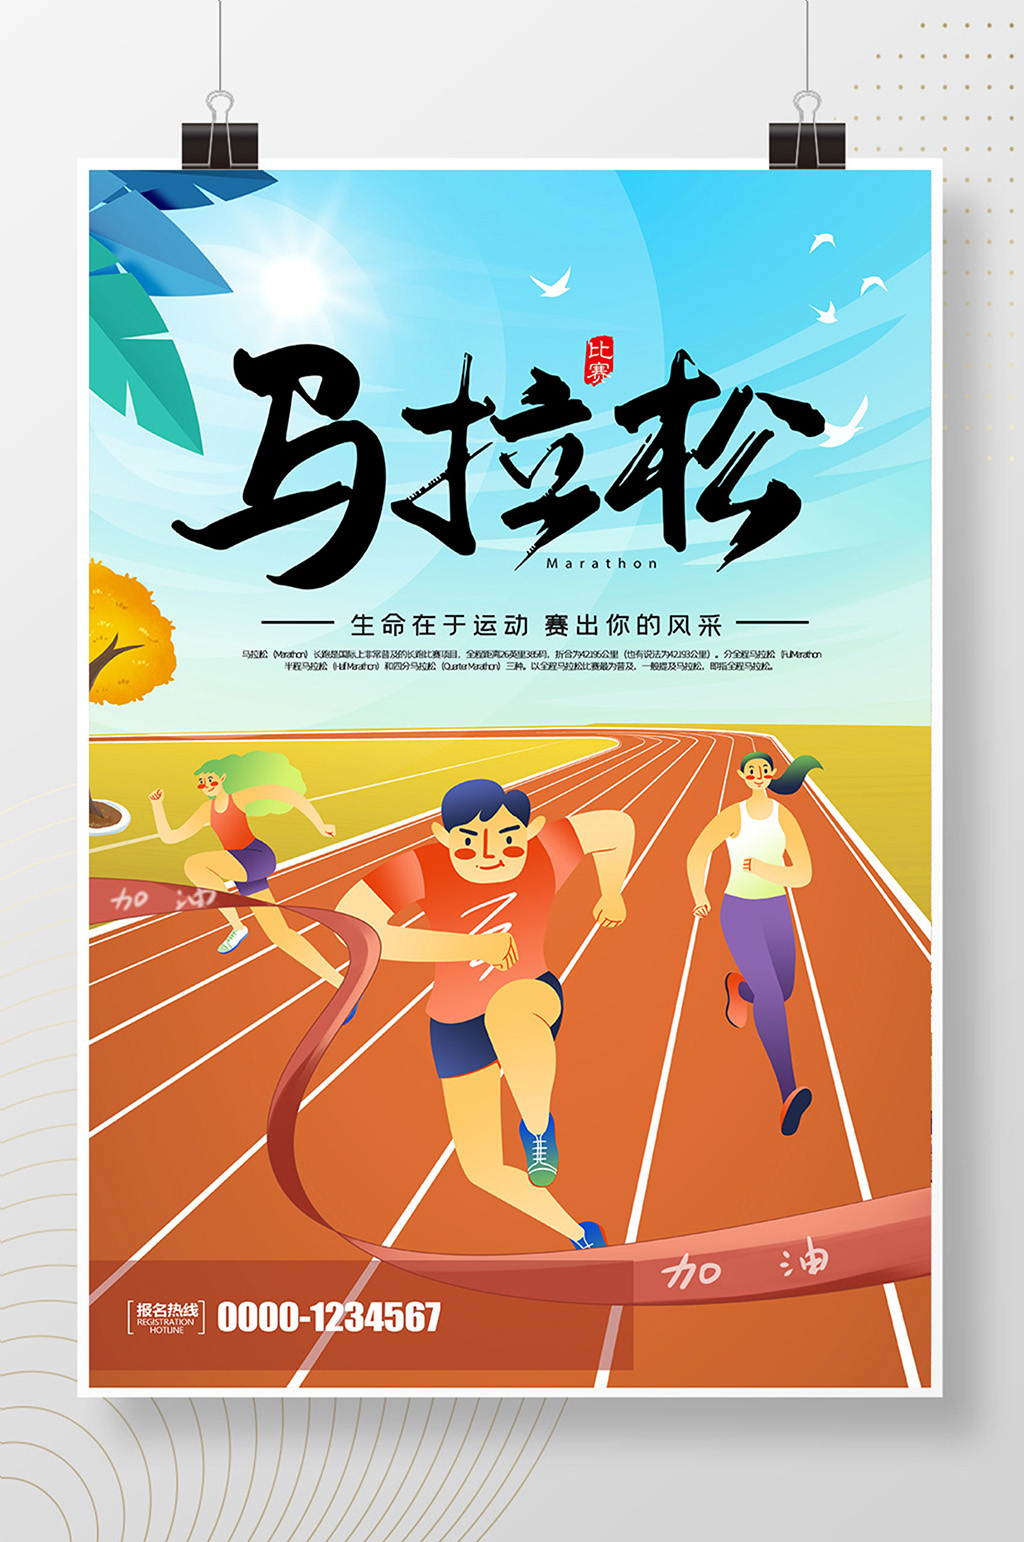 简约卡通马拉松比赛宣传海报